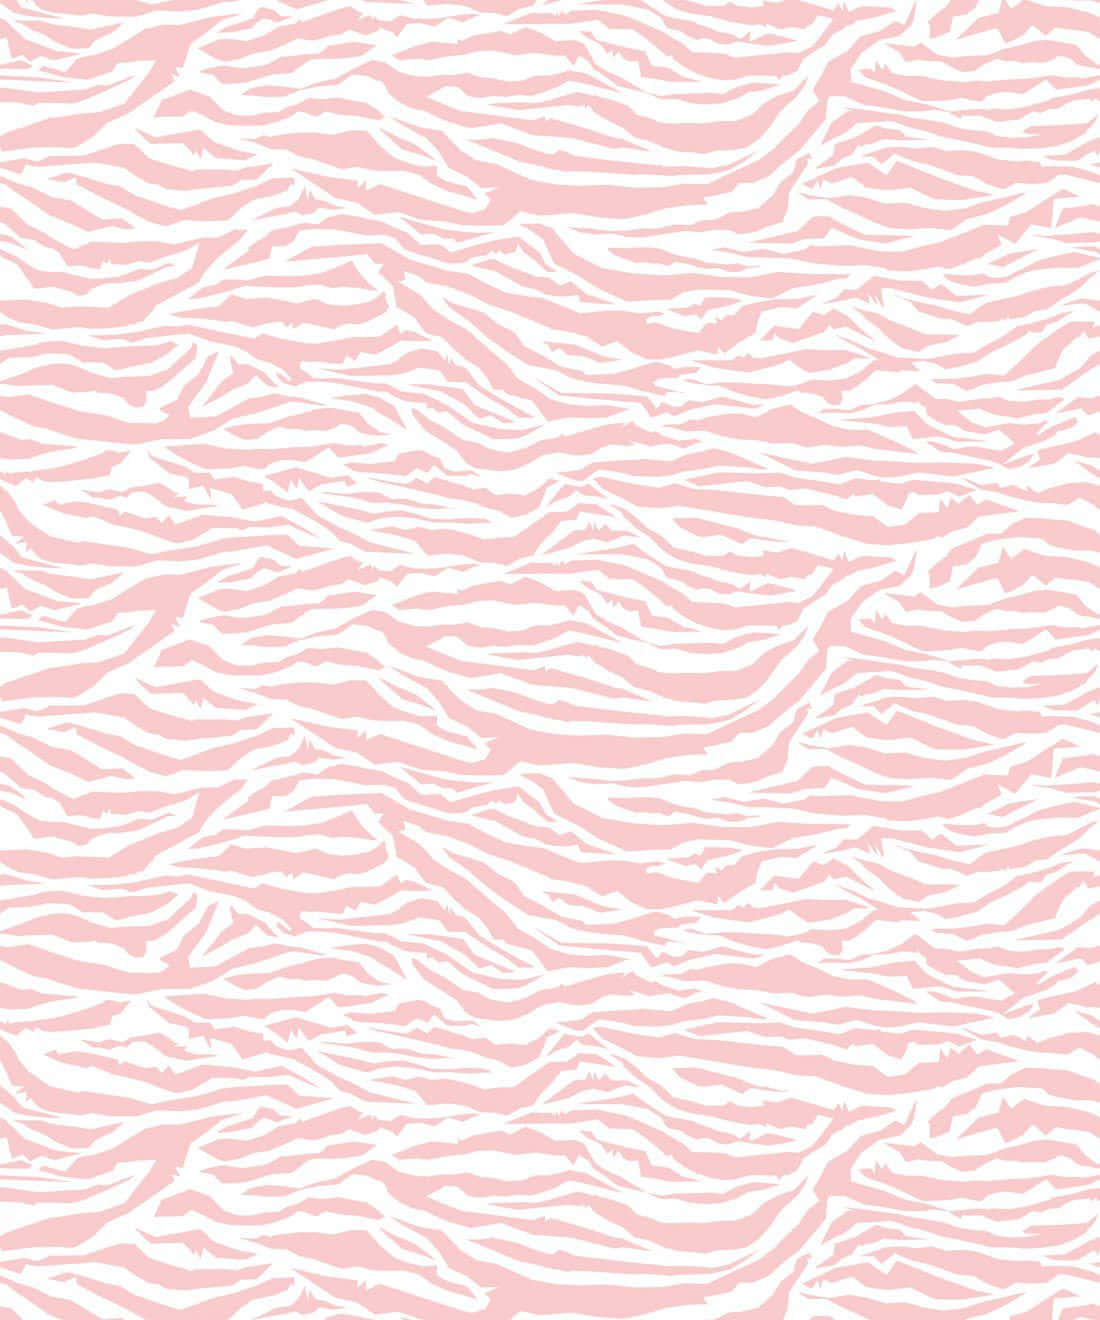 Levende farver af pink zebra patterner give liv til din skærm. Wallpaper